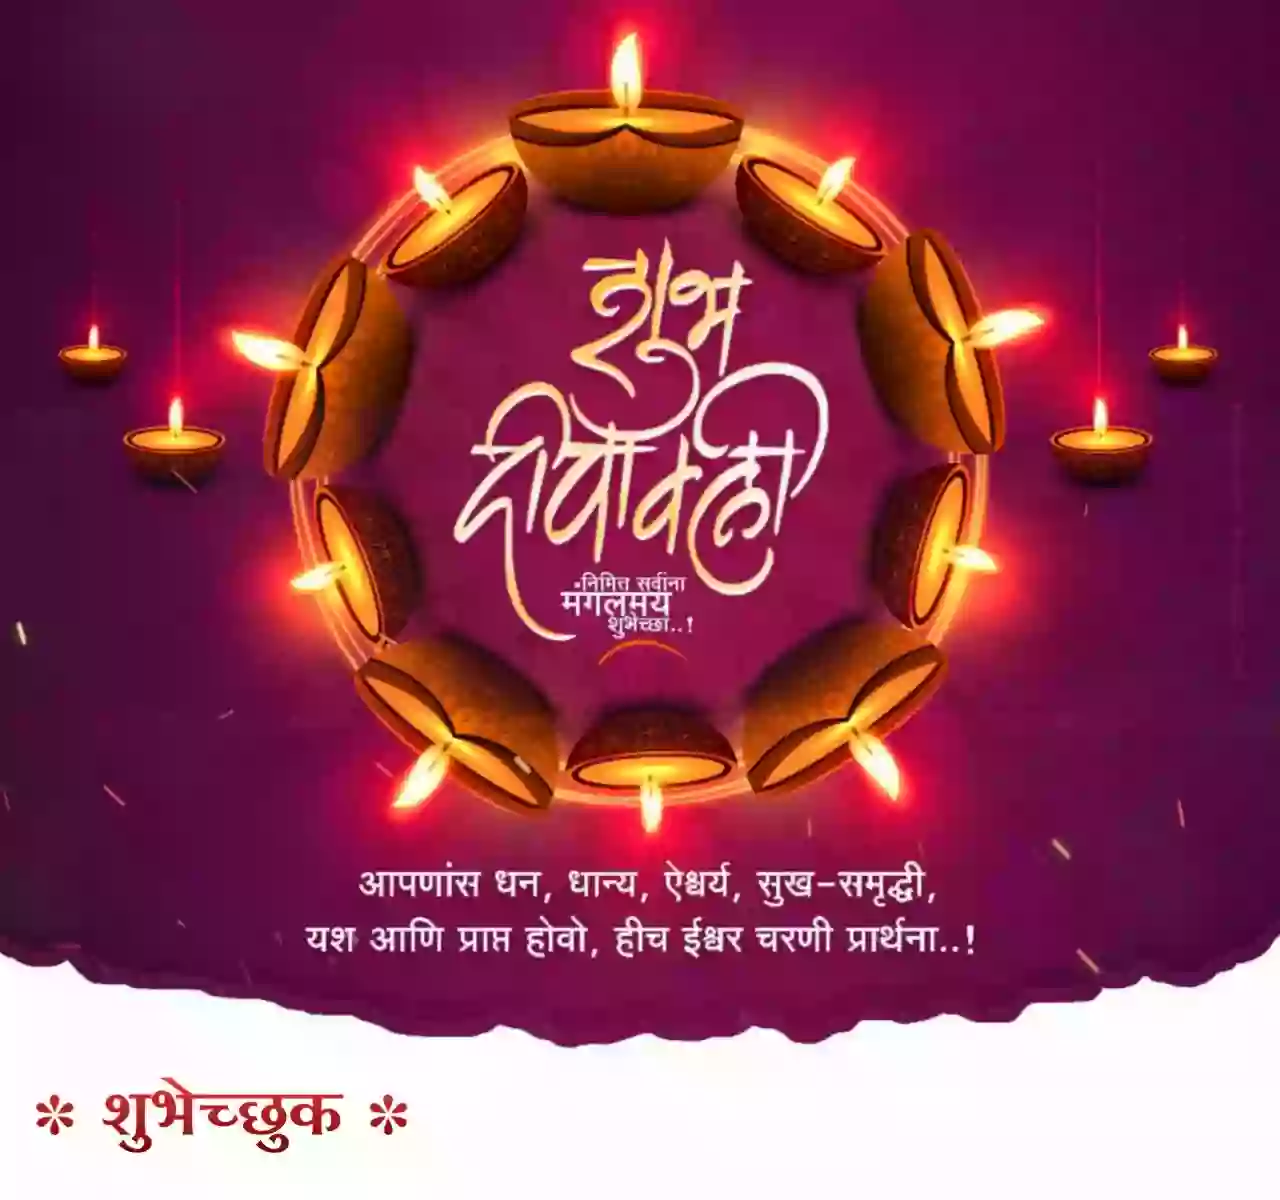 Diwali greetings in marathi 2021